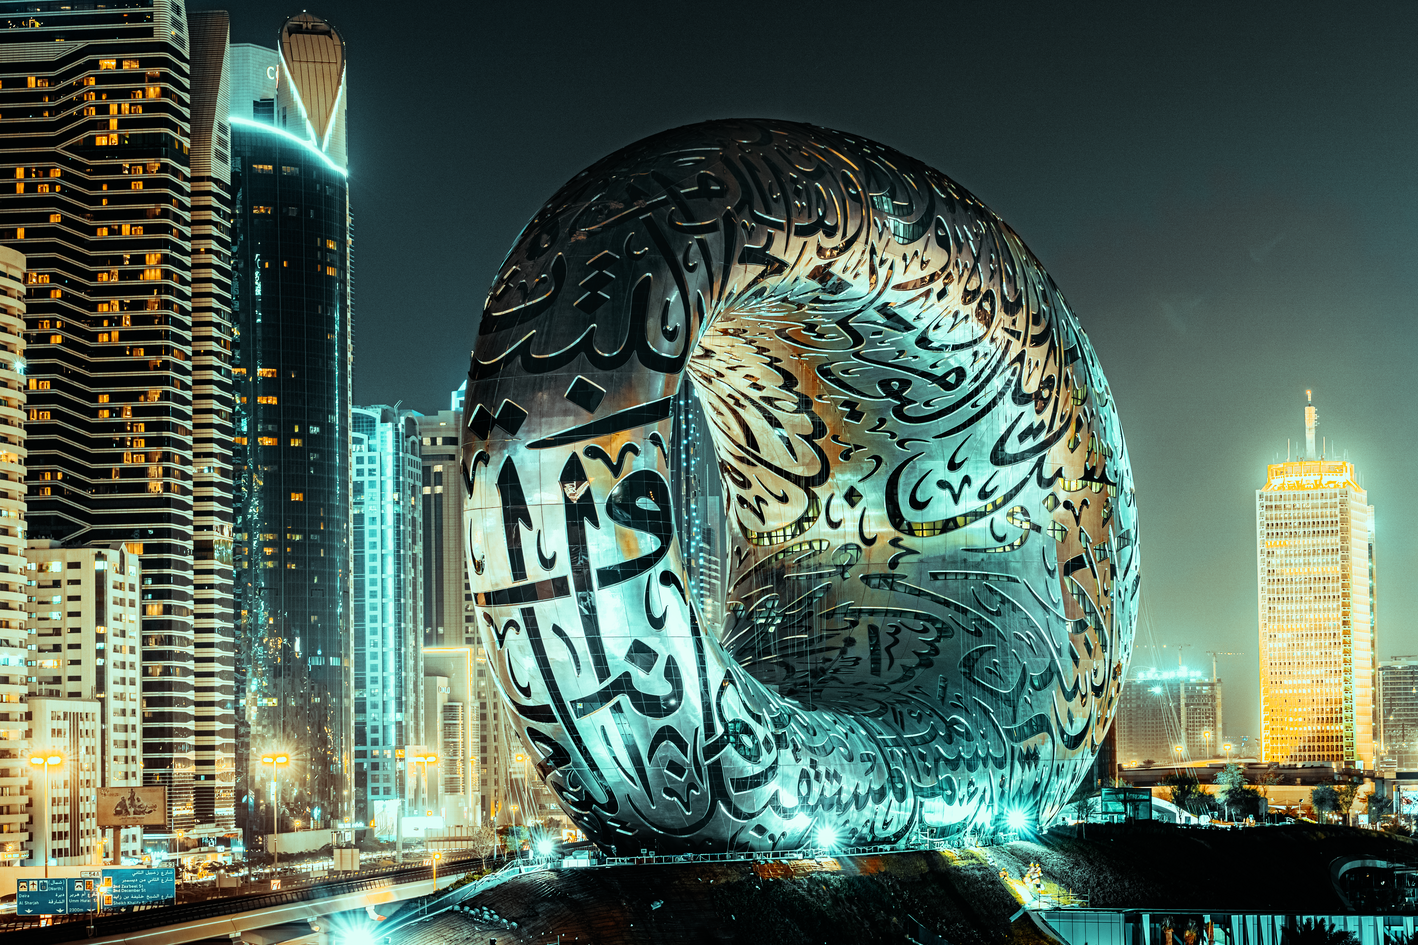 The Museum of the Future in Dubai